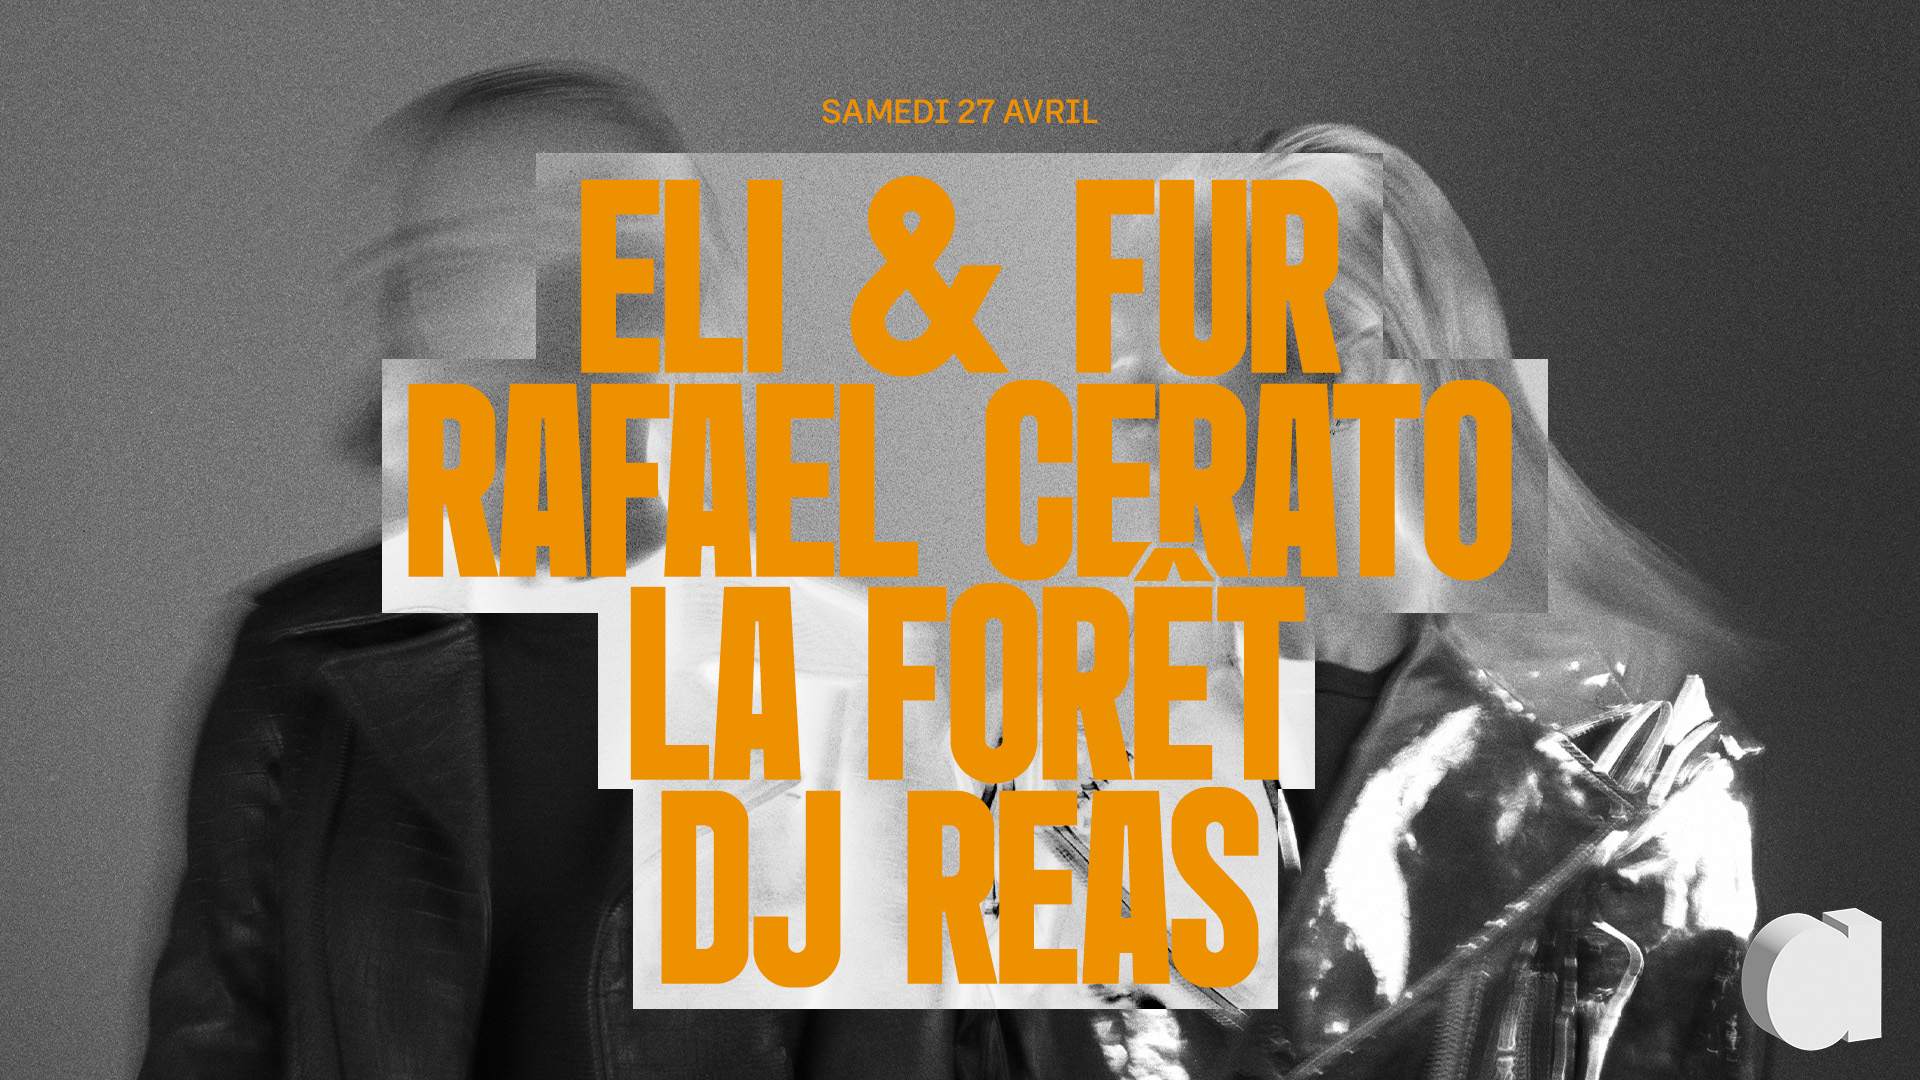 Eli & Fur · Rafael Cerato · La Forêt · DJ Reas - Página frontal